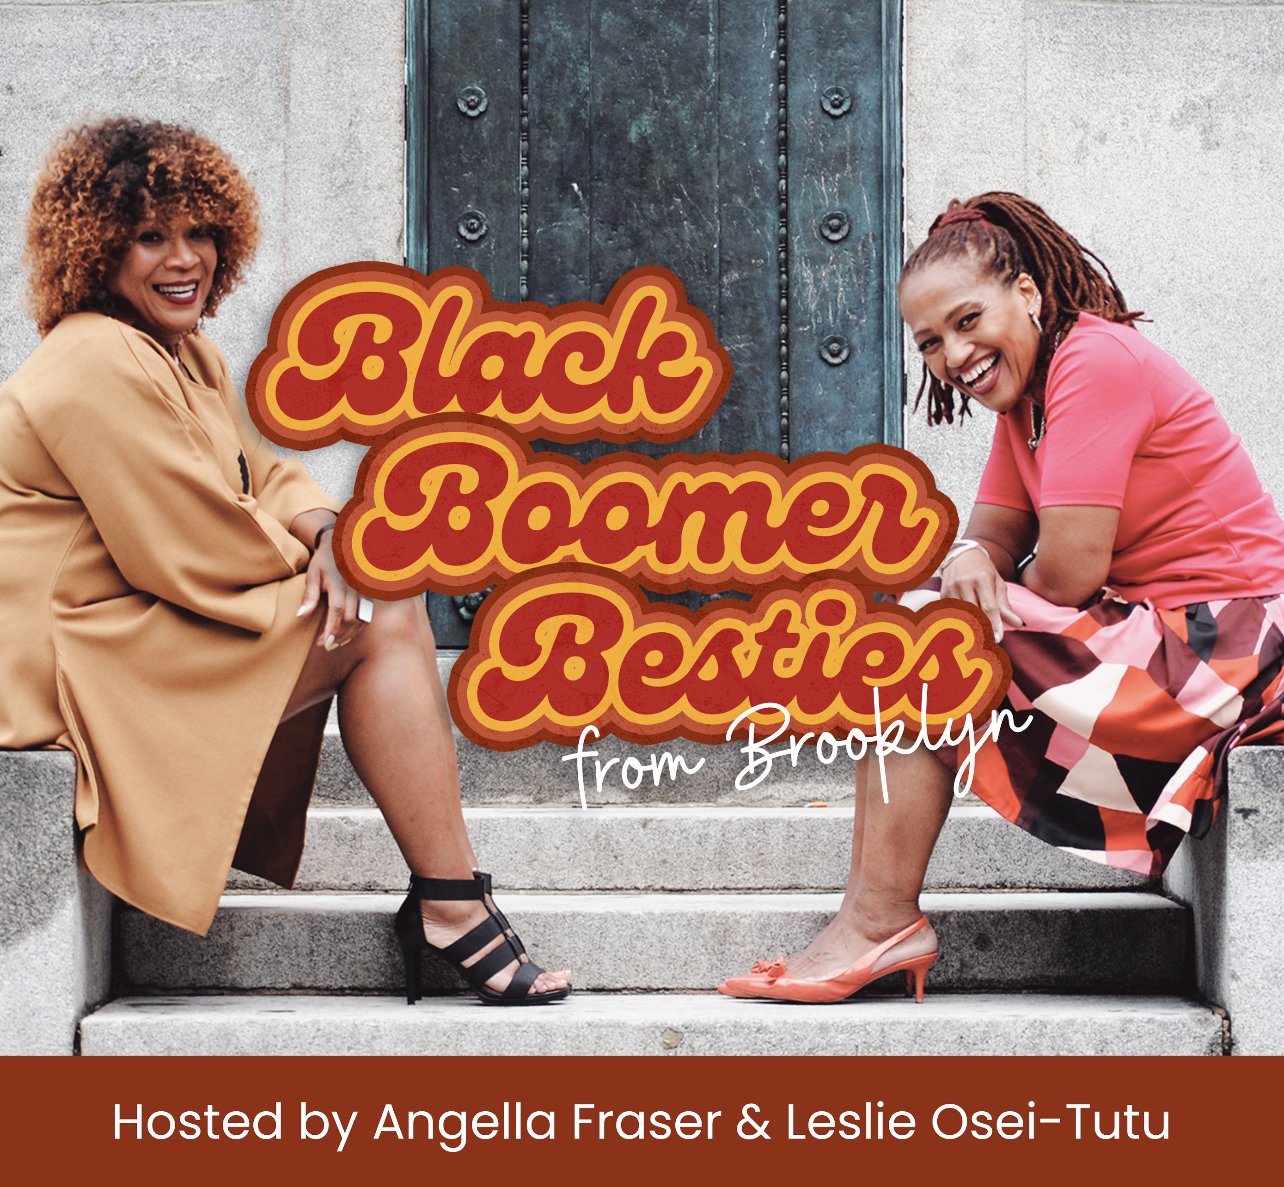 Black Boomer Besties from Brooklyn